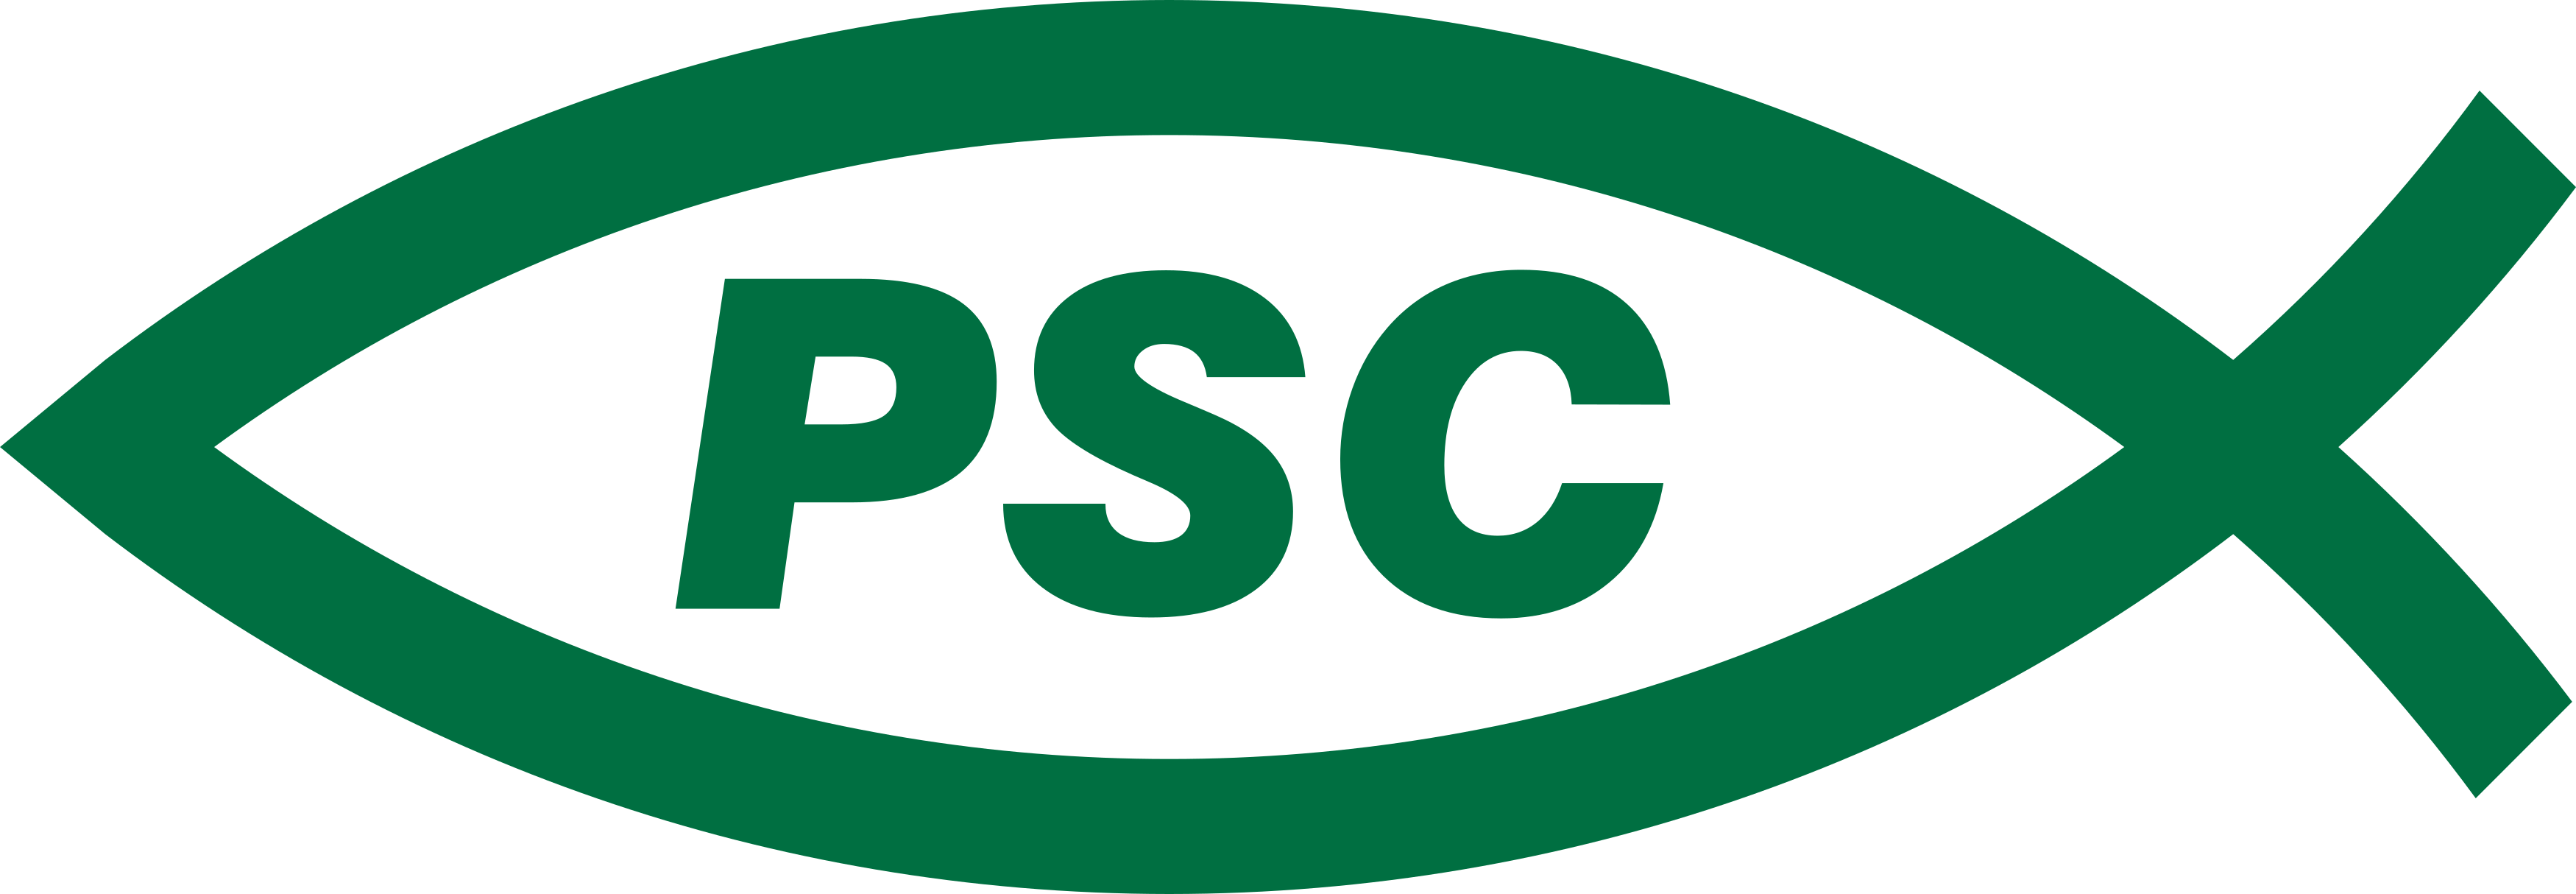 PSC Logo - Partido Social Cristão Logo.